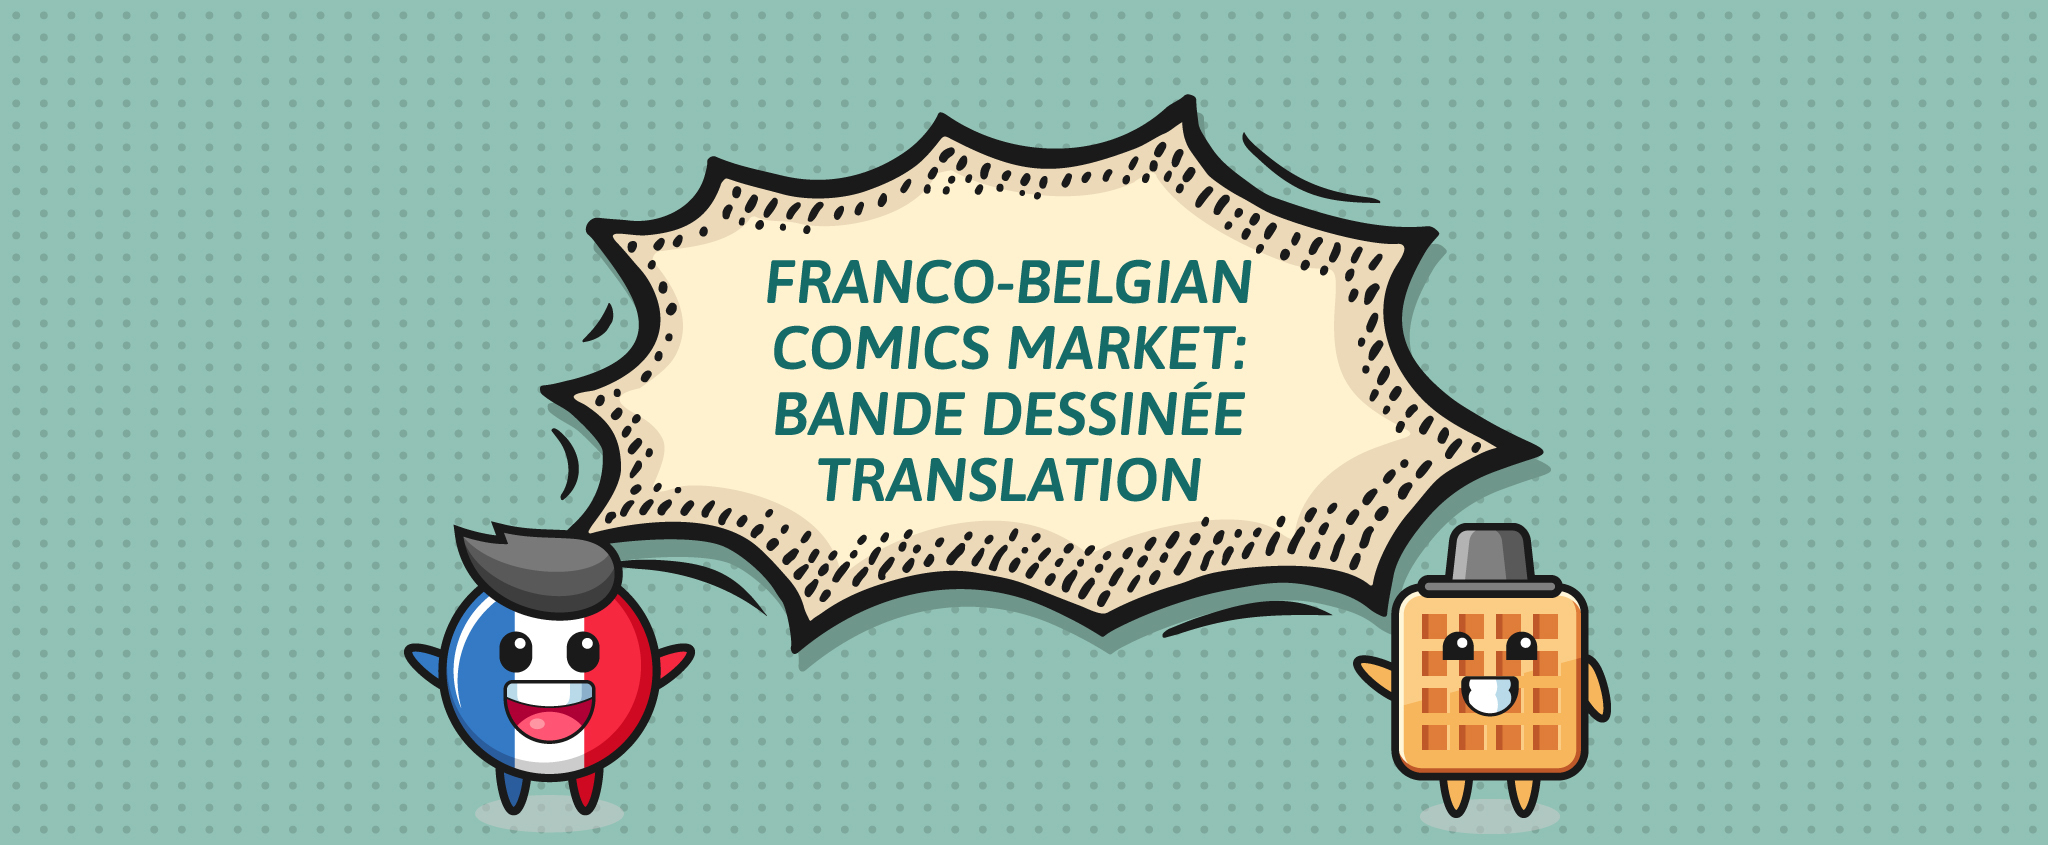 Franco-Belgian Comics Market - Bande Dessinée Translation